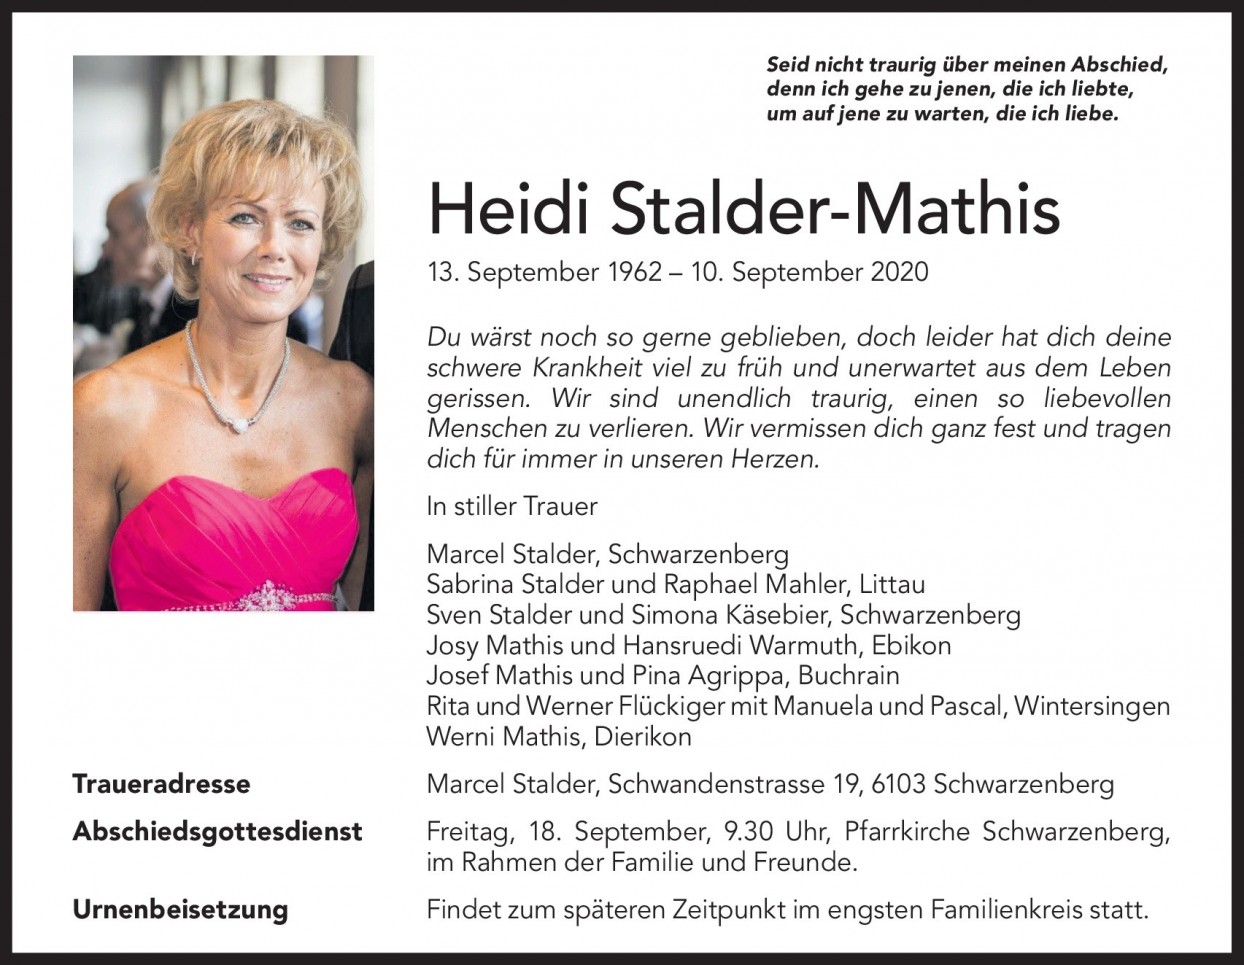 Heidi Stalder-Mathis